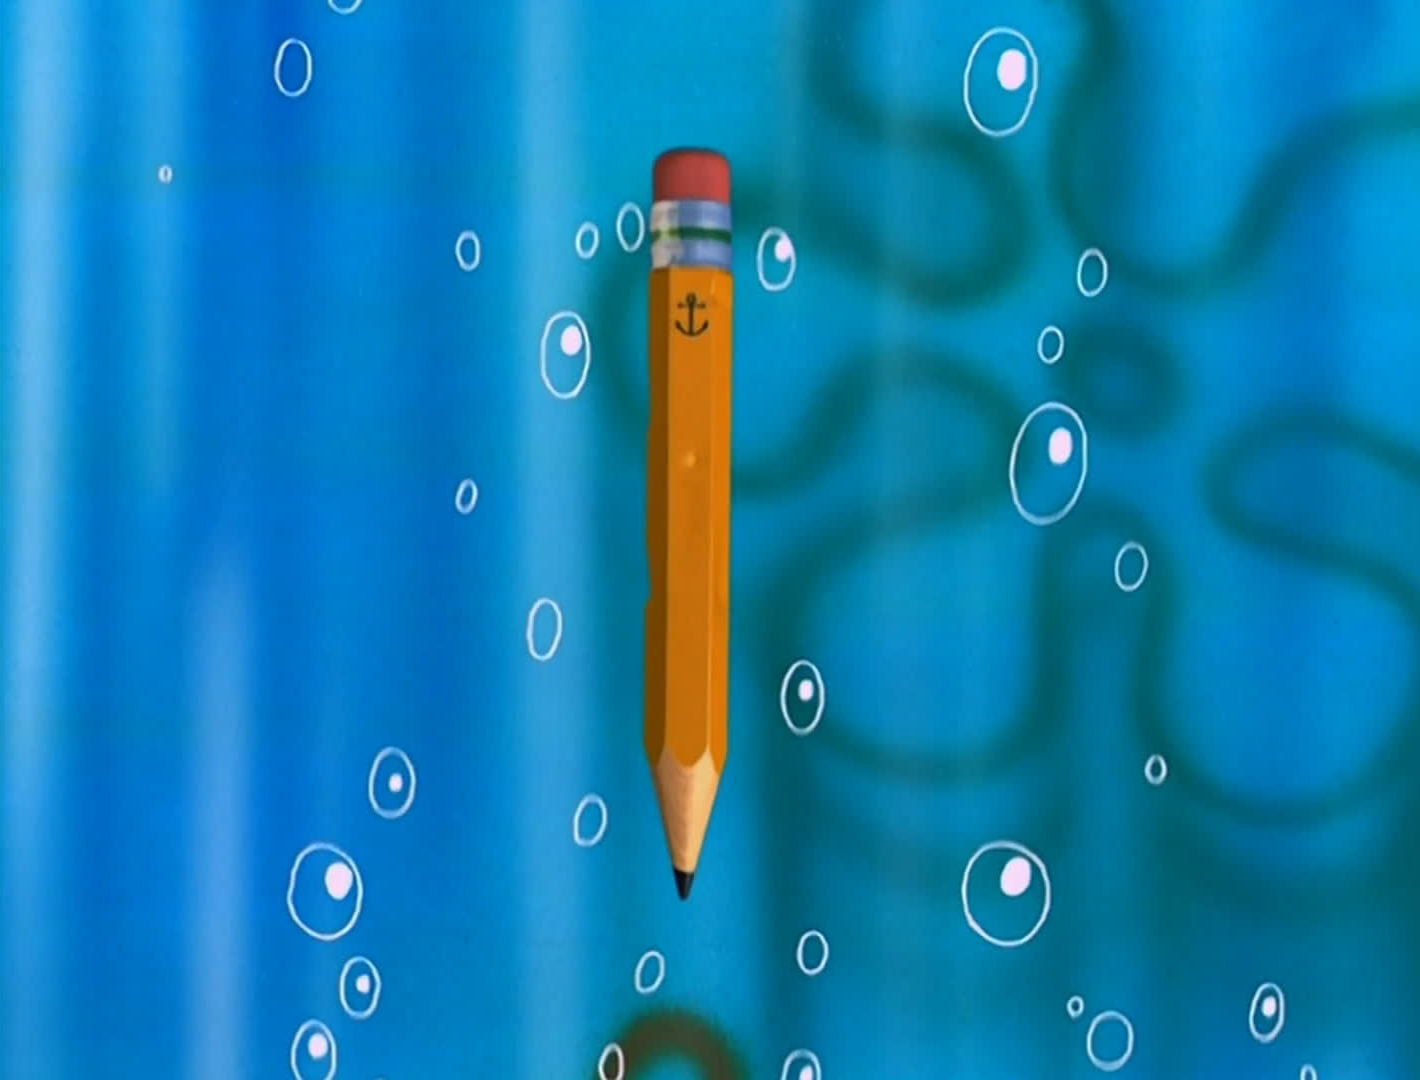 spongebob vs doodlebob and the magic pencil download